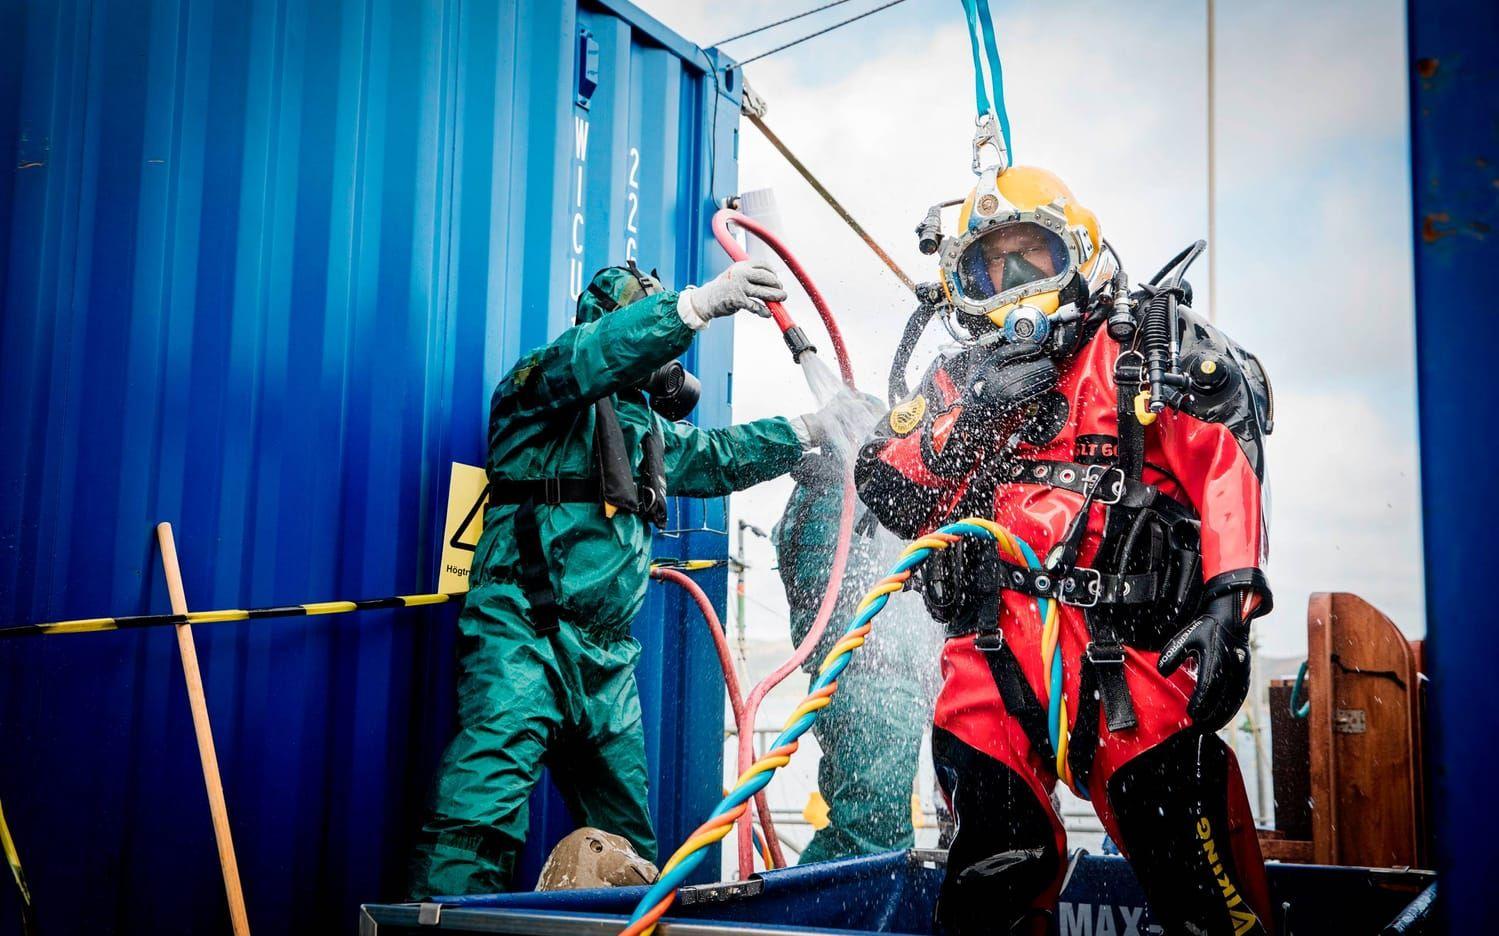 Tomasz Cisek är dykare i polska marinen och deltar i det gemensamma dykprojektet DiveSMART. I dagens övning som han gör tillsammans med den lettiska dykaren Modris Karlsons övar de i kontaminerat vatten. Efter övningen blir de avspolade för att de inte ska få med sig något av det förorenade vattnet.